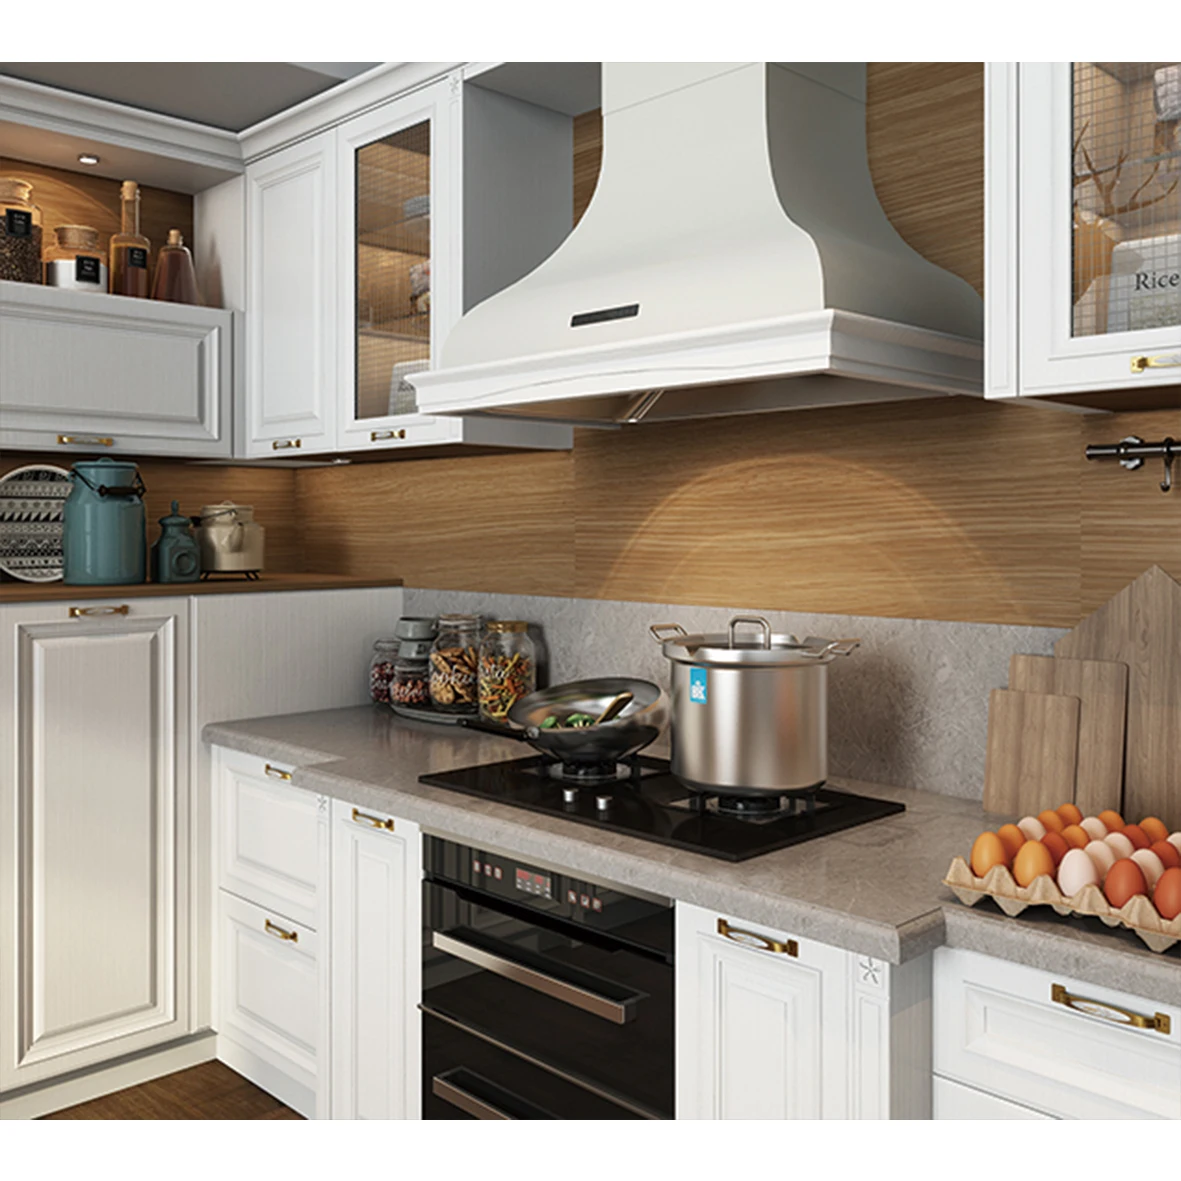 New Design Kitchen Cabinet Wood Veneer Kitchen Cupboard With Island